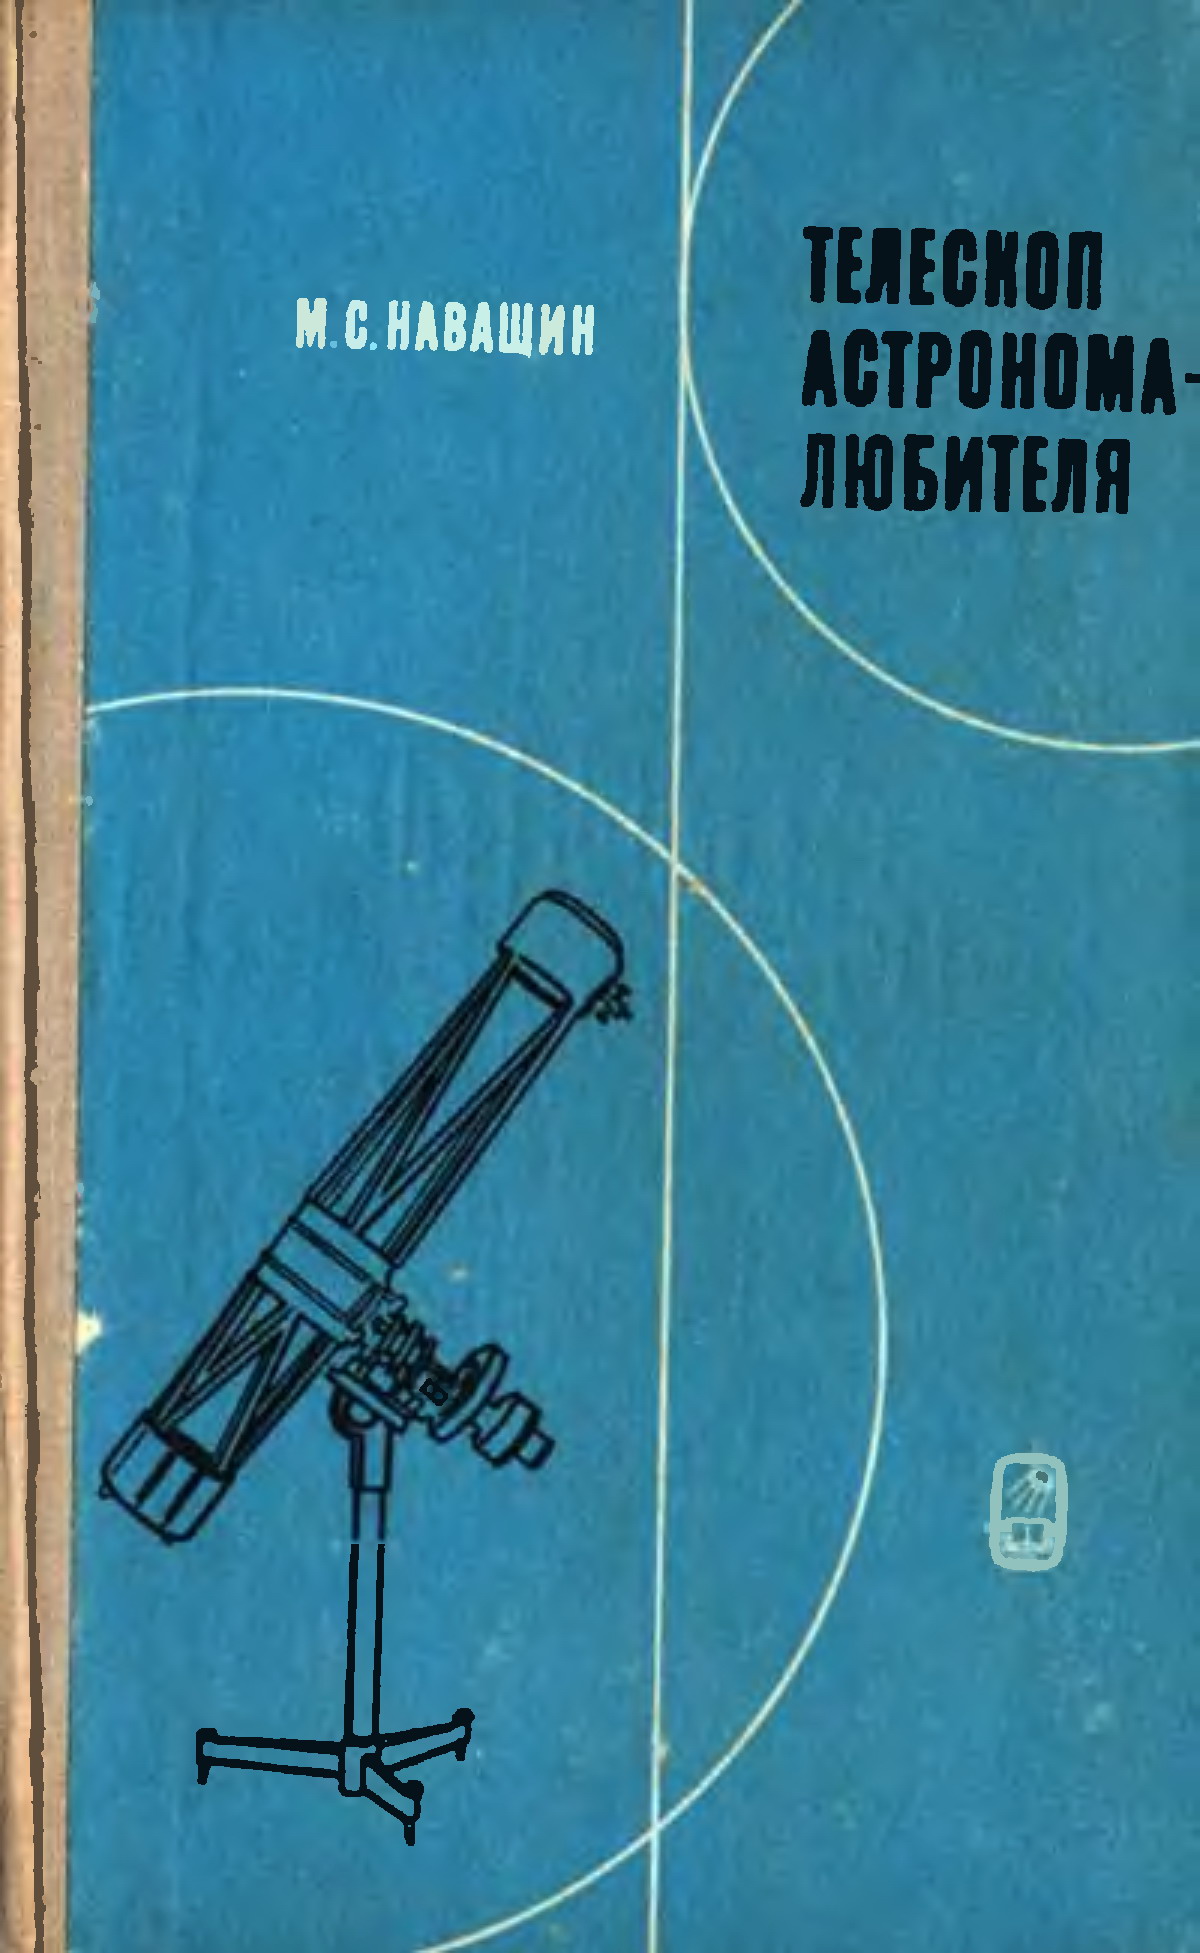 Навашин Телескоп